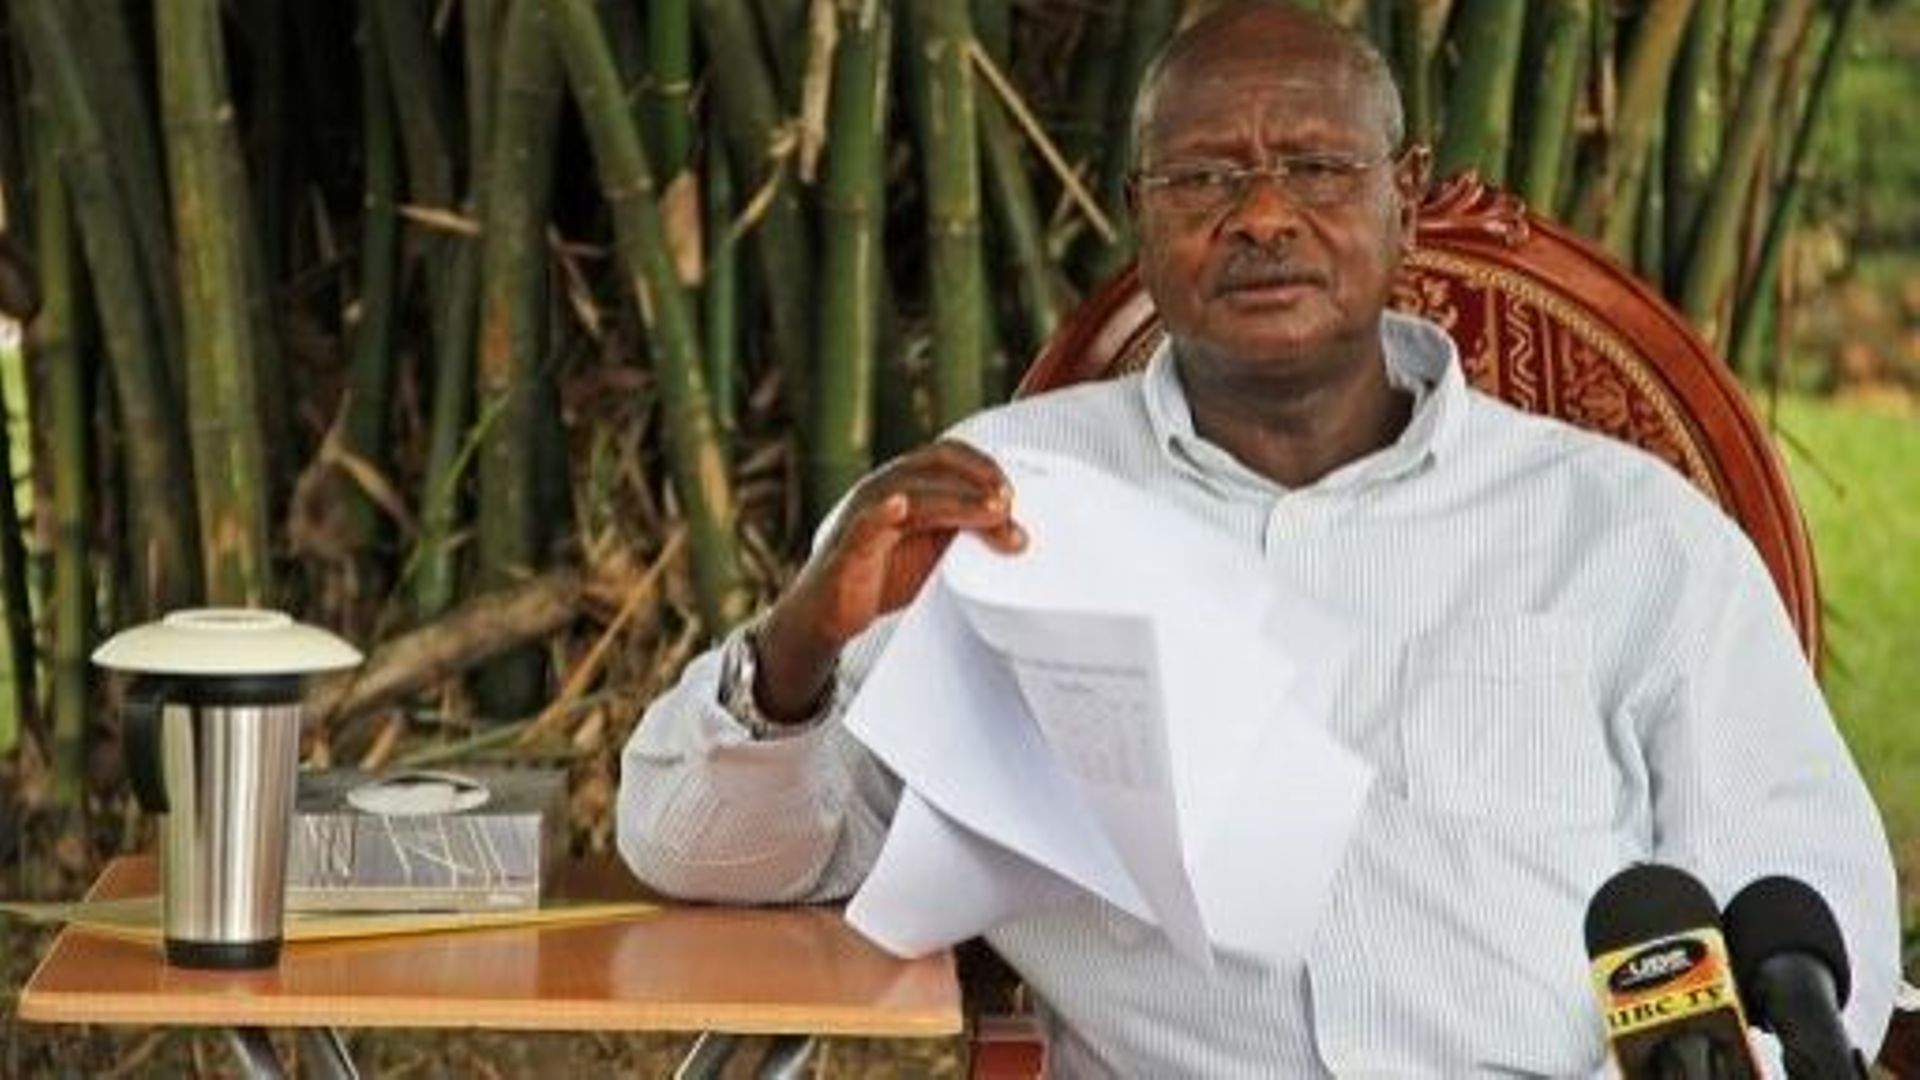 RDC: la Monusco, "une honte" qui fait "du tourisme" selon Y. Museveni